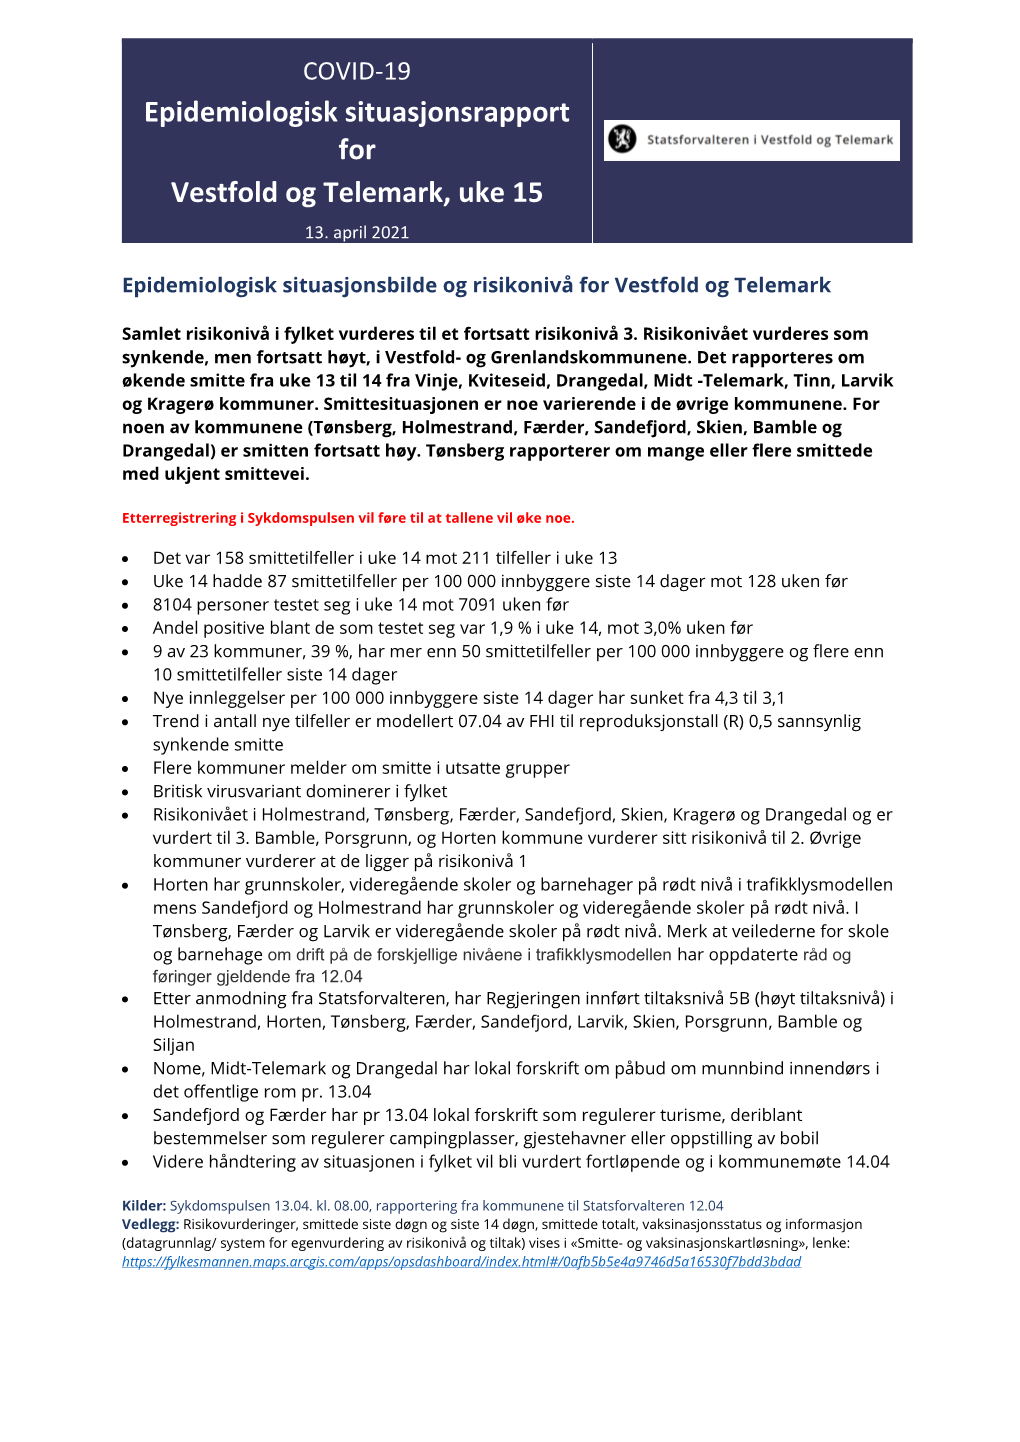 Epidemiologisk Situasjonsrapport for Vestfold Og Telemark, Uke 15